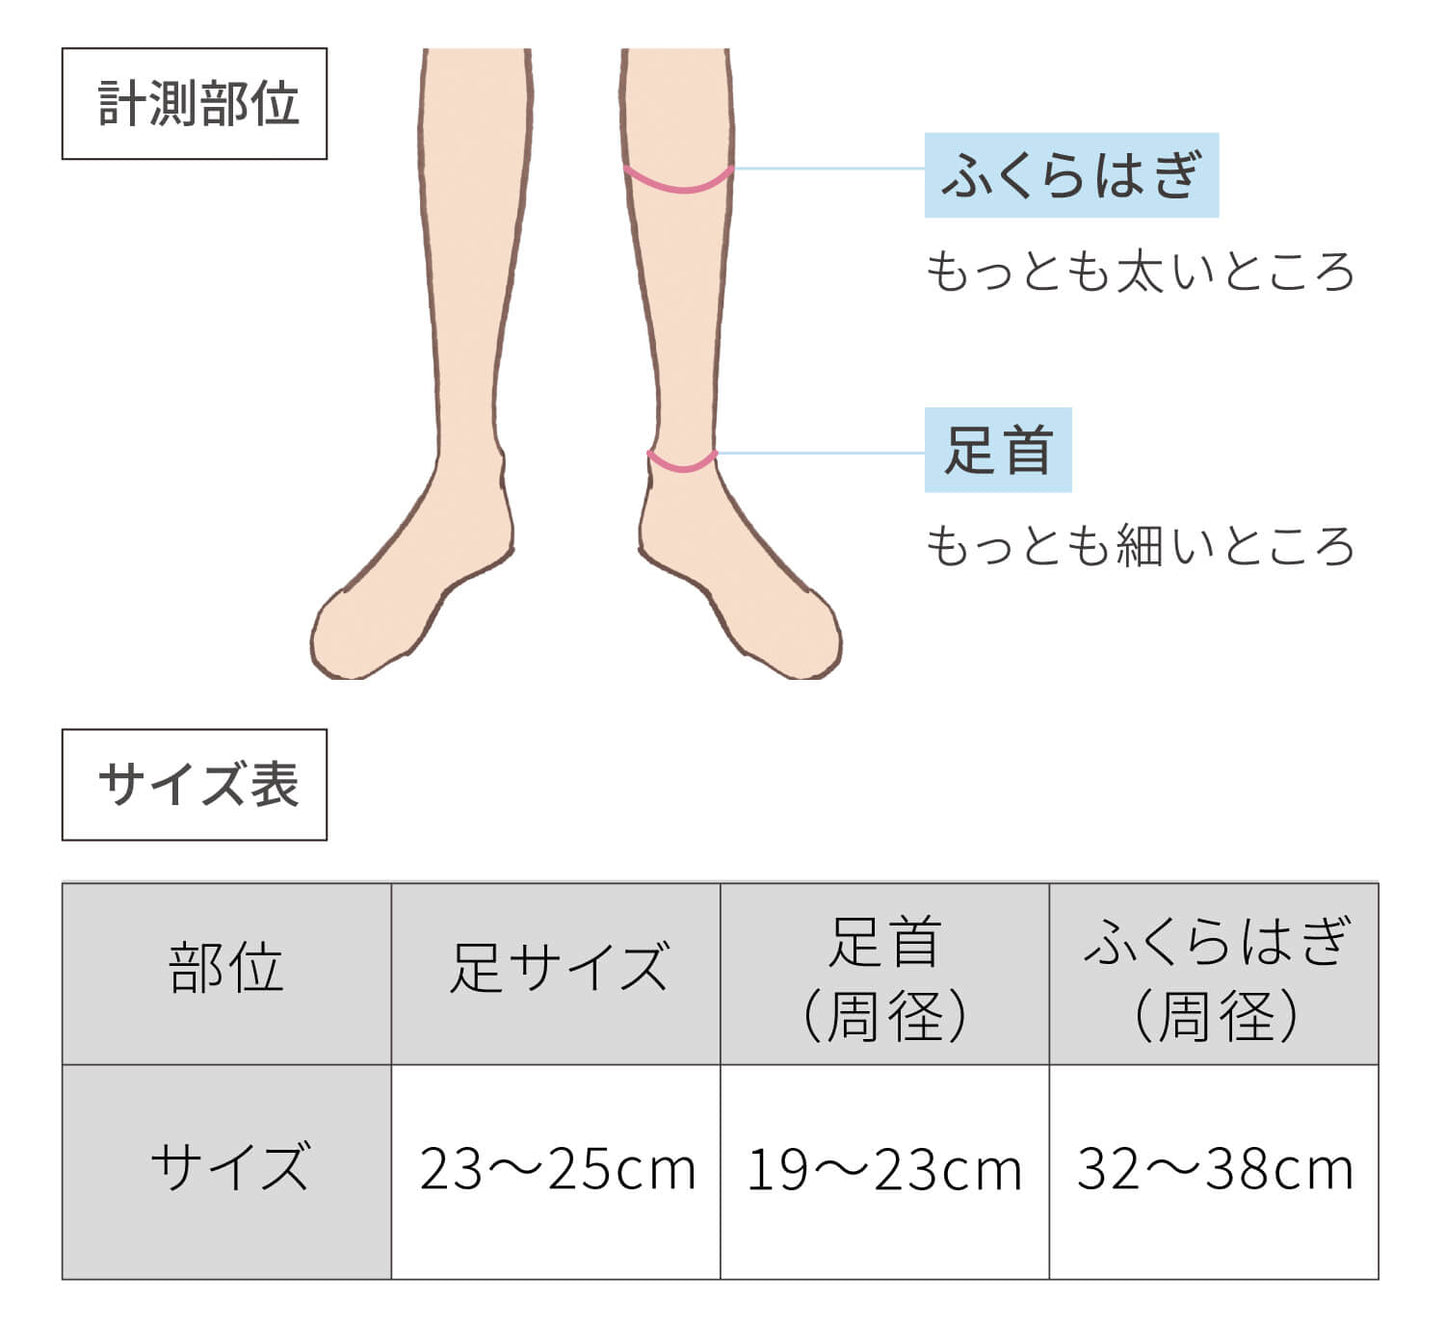 サイズ表、足：23から25センチメートル、足首：19から23センチメートル、ふくらはぎ：32から38センチメートル